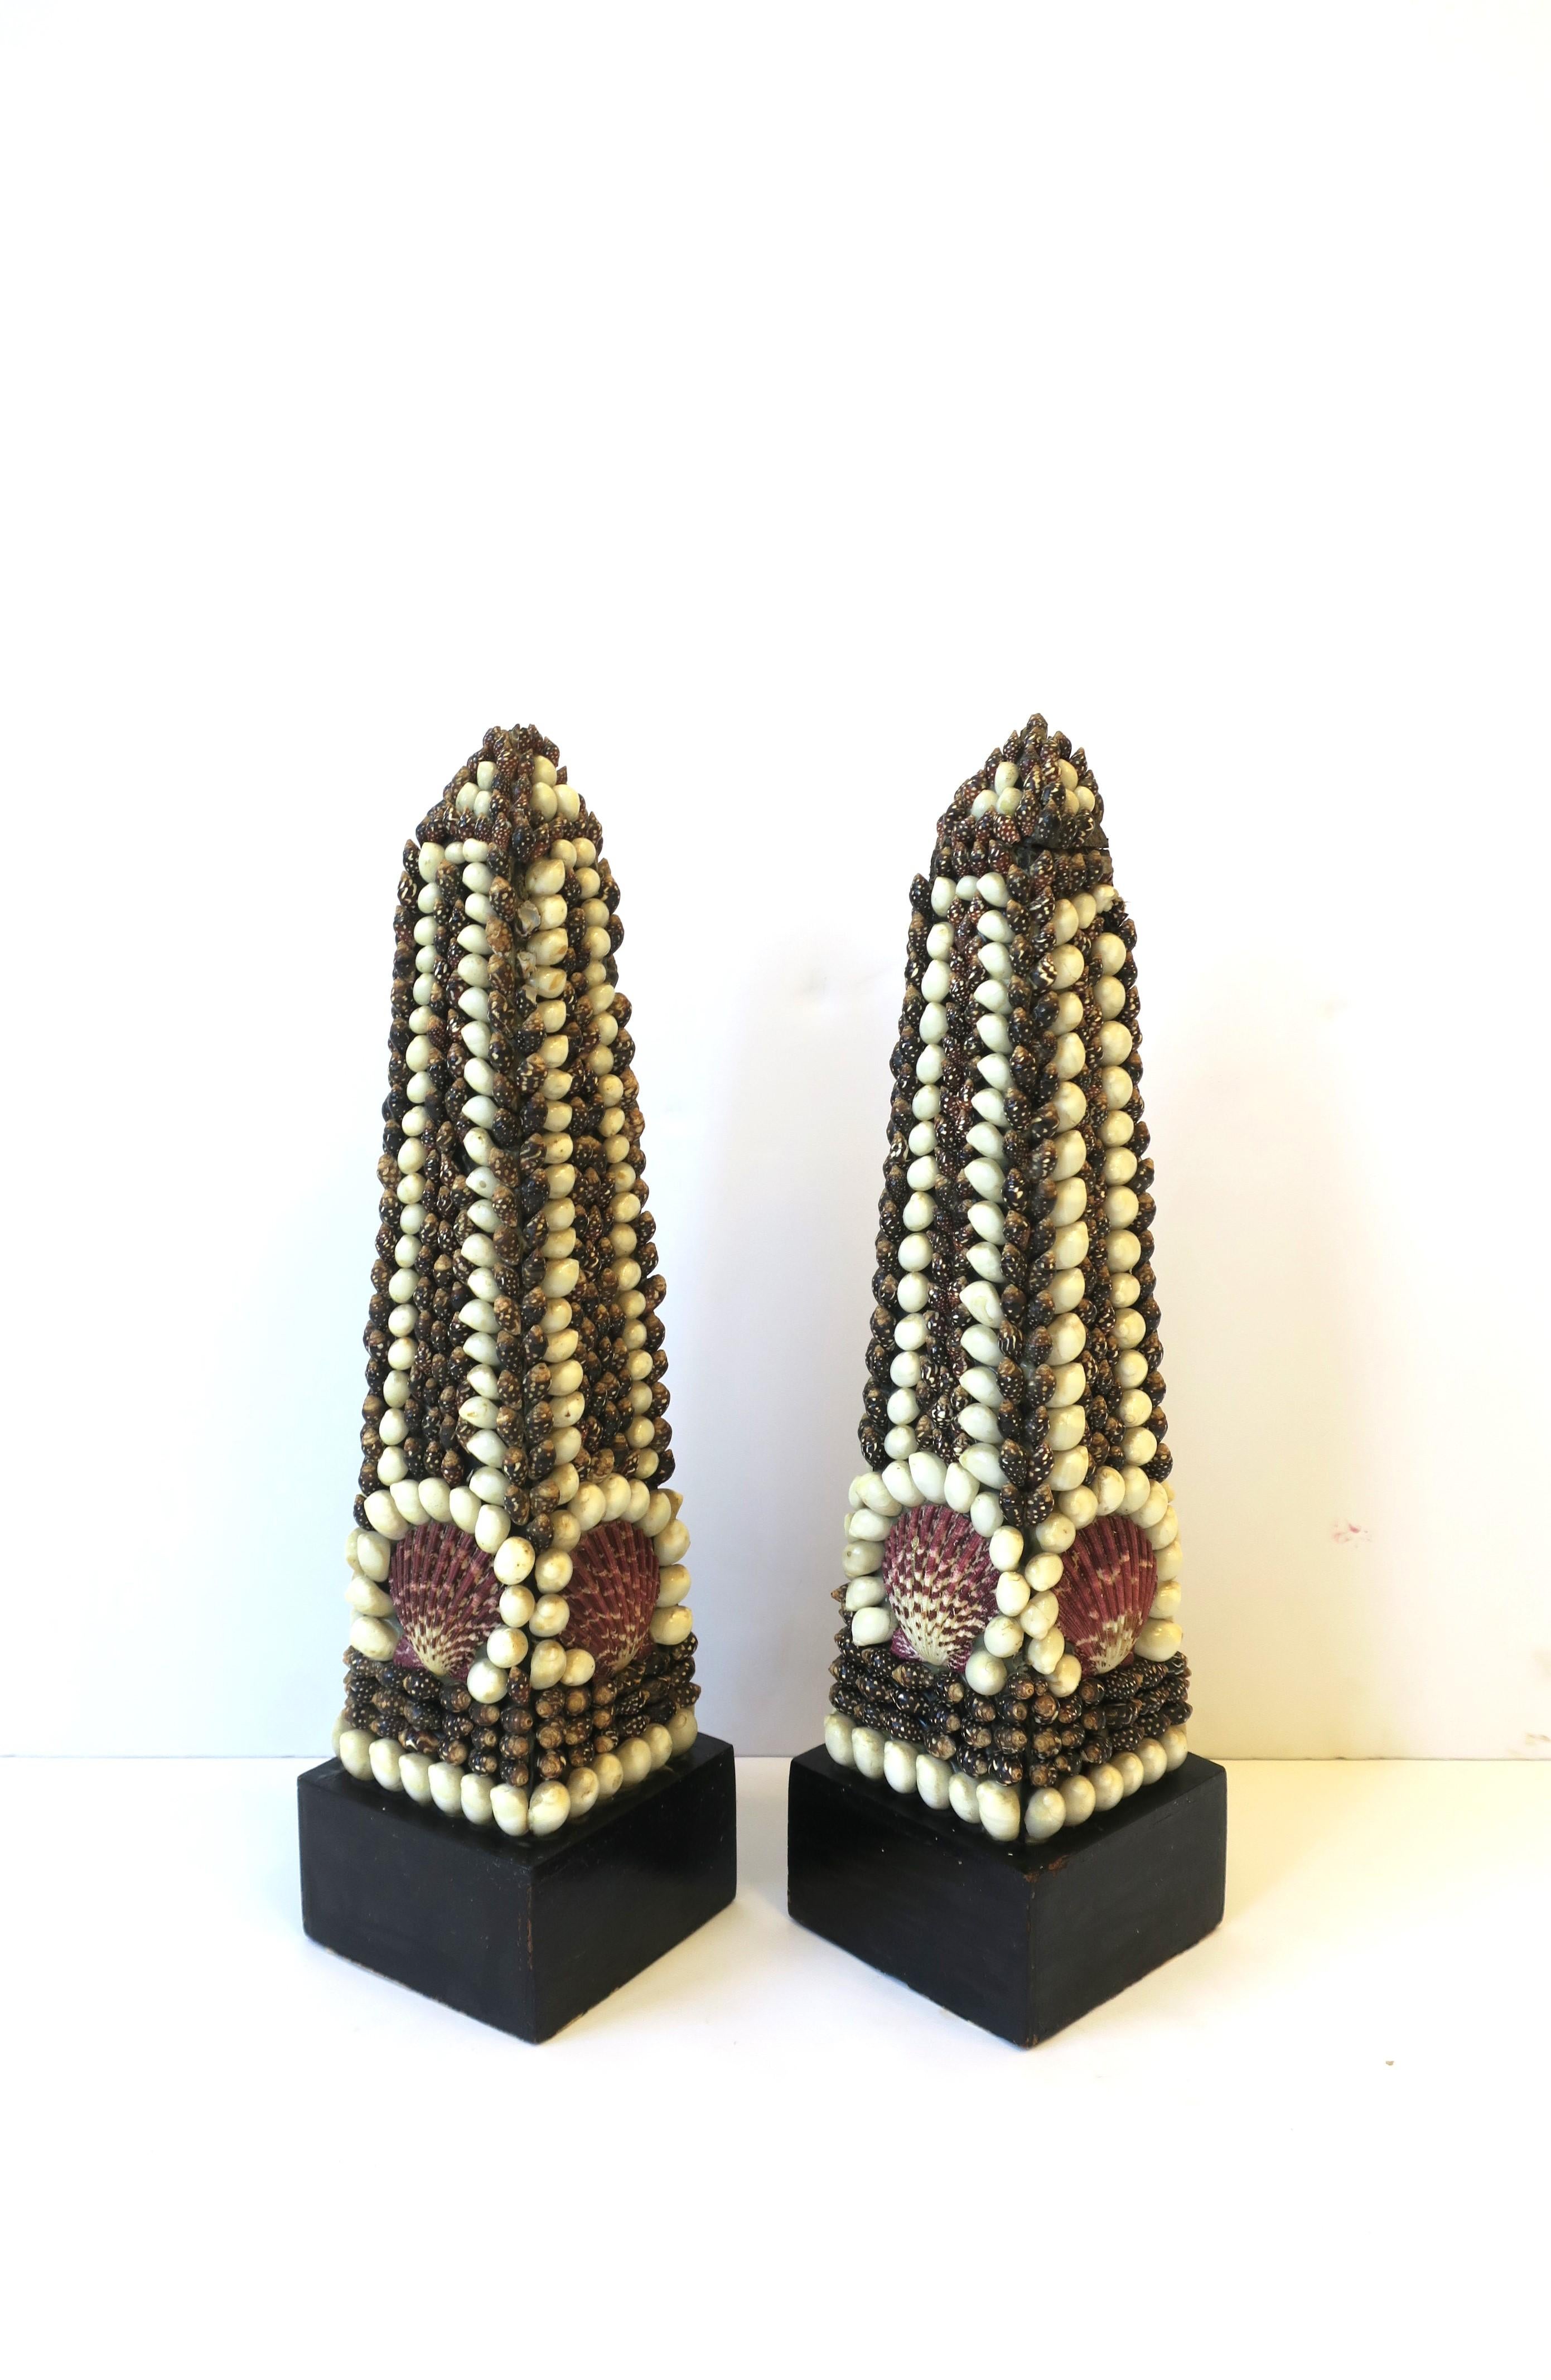 Seashell Covered Obelisks, Pair 3